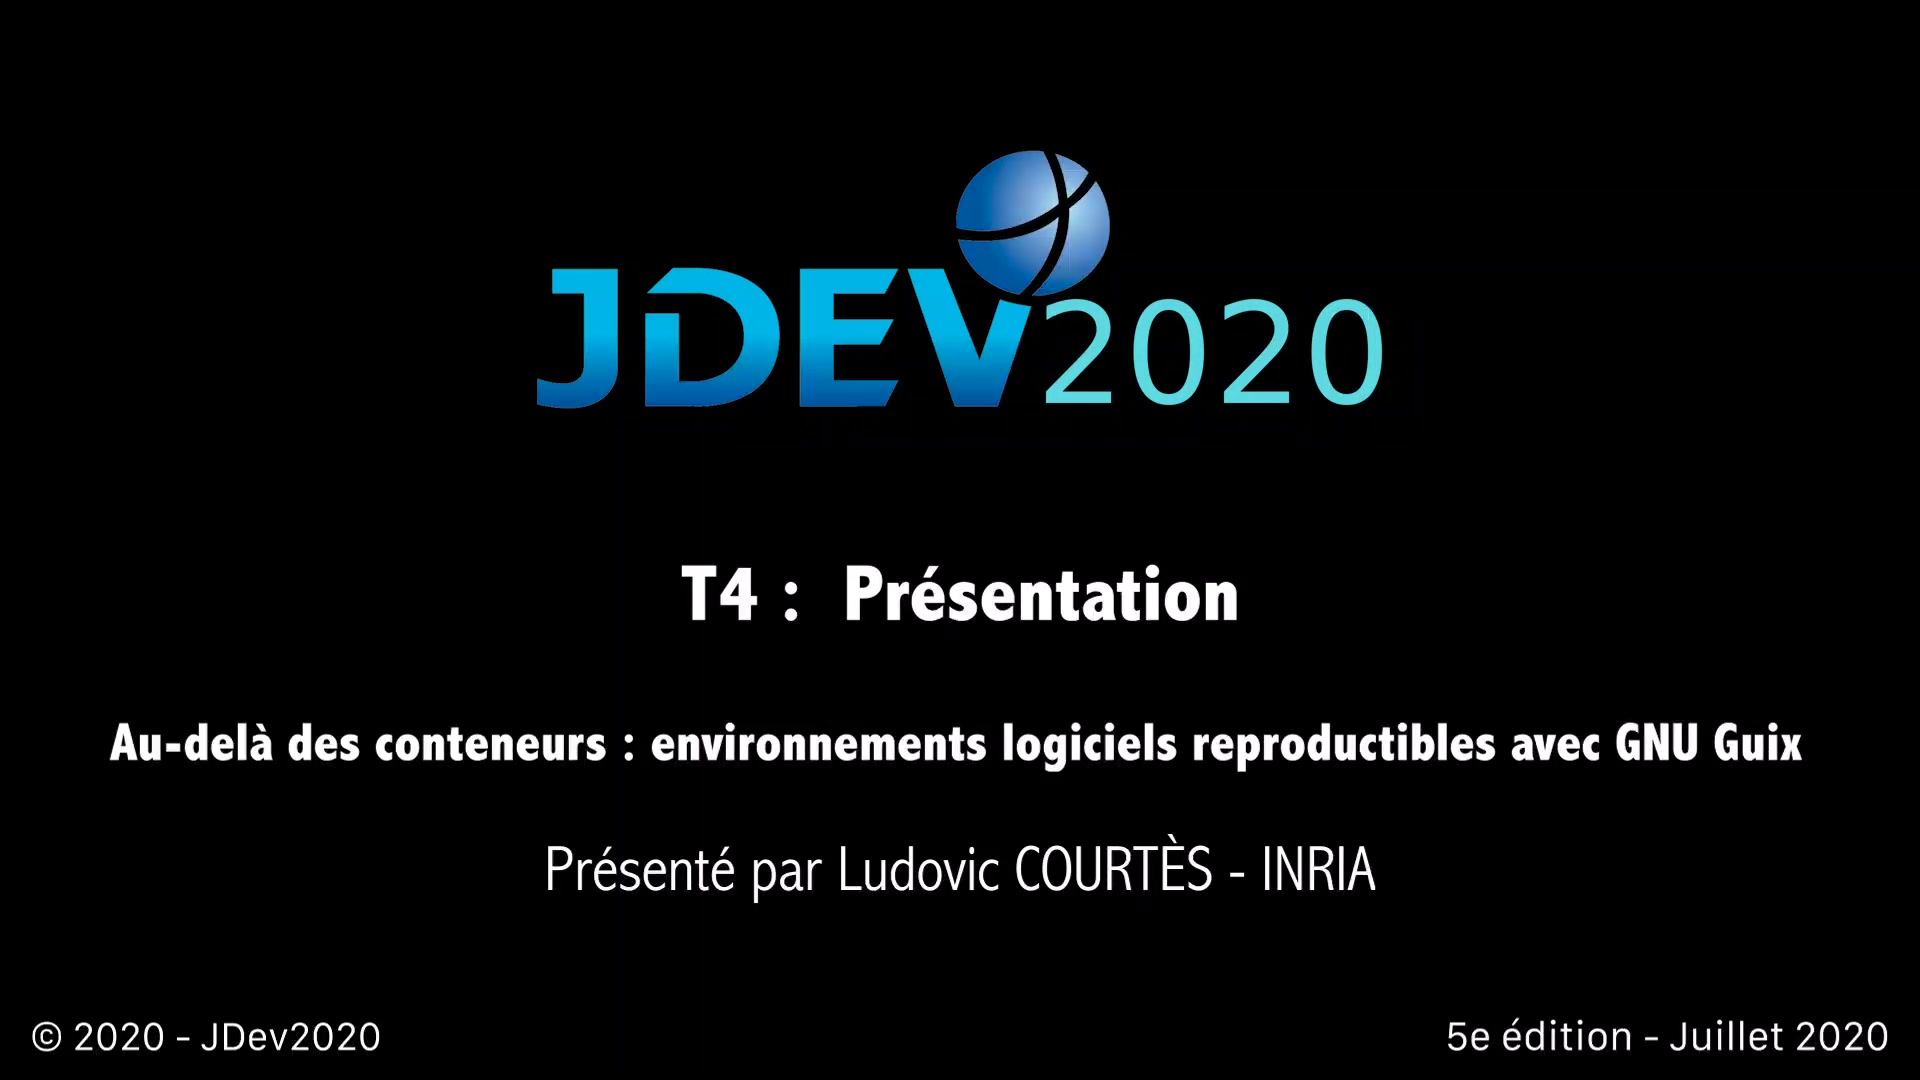 JDev2020 : T4 : Au-delà des conteneurs : environnements logiciels reproductibles avec GNU Guix